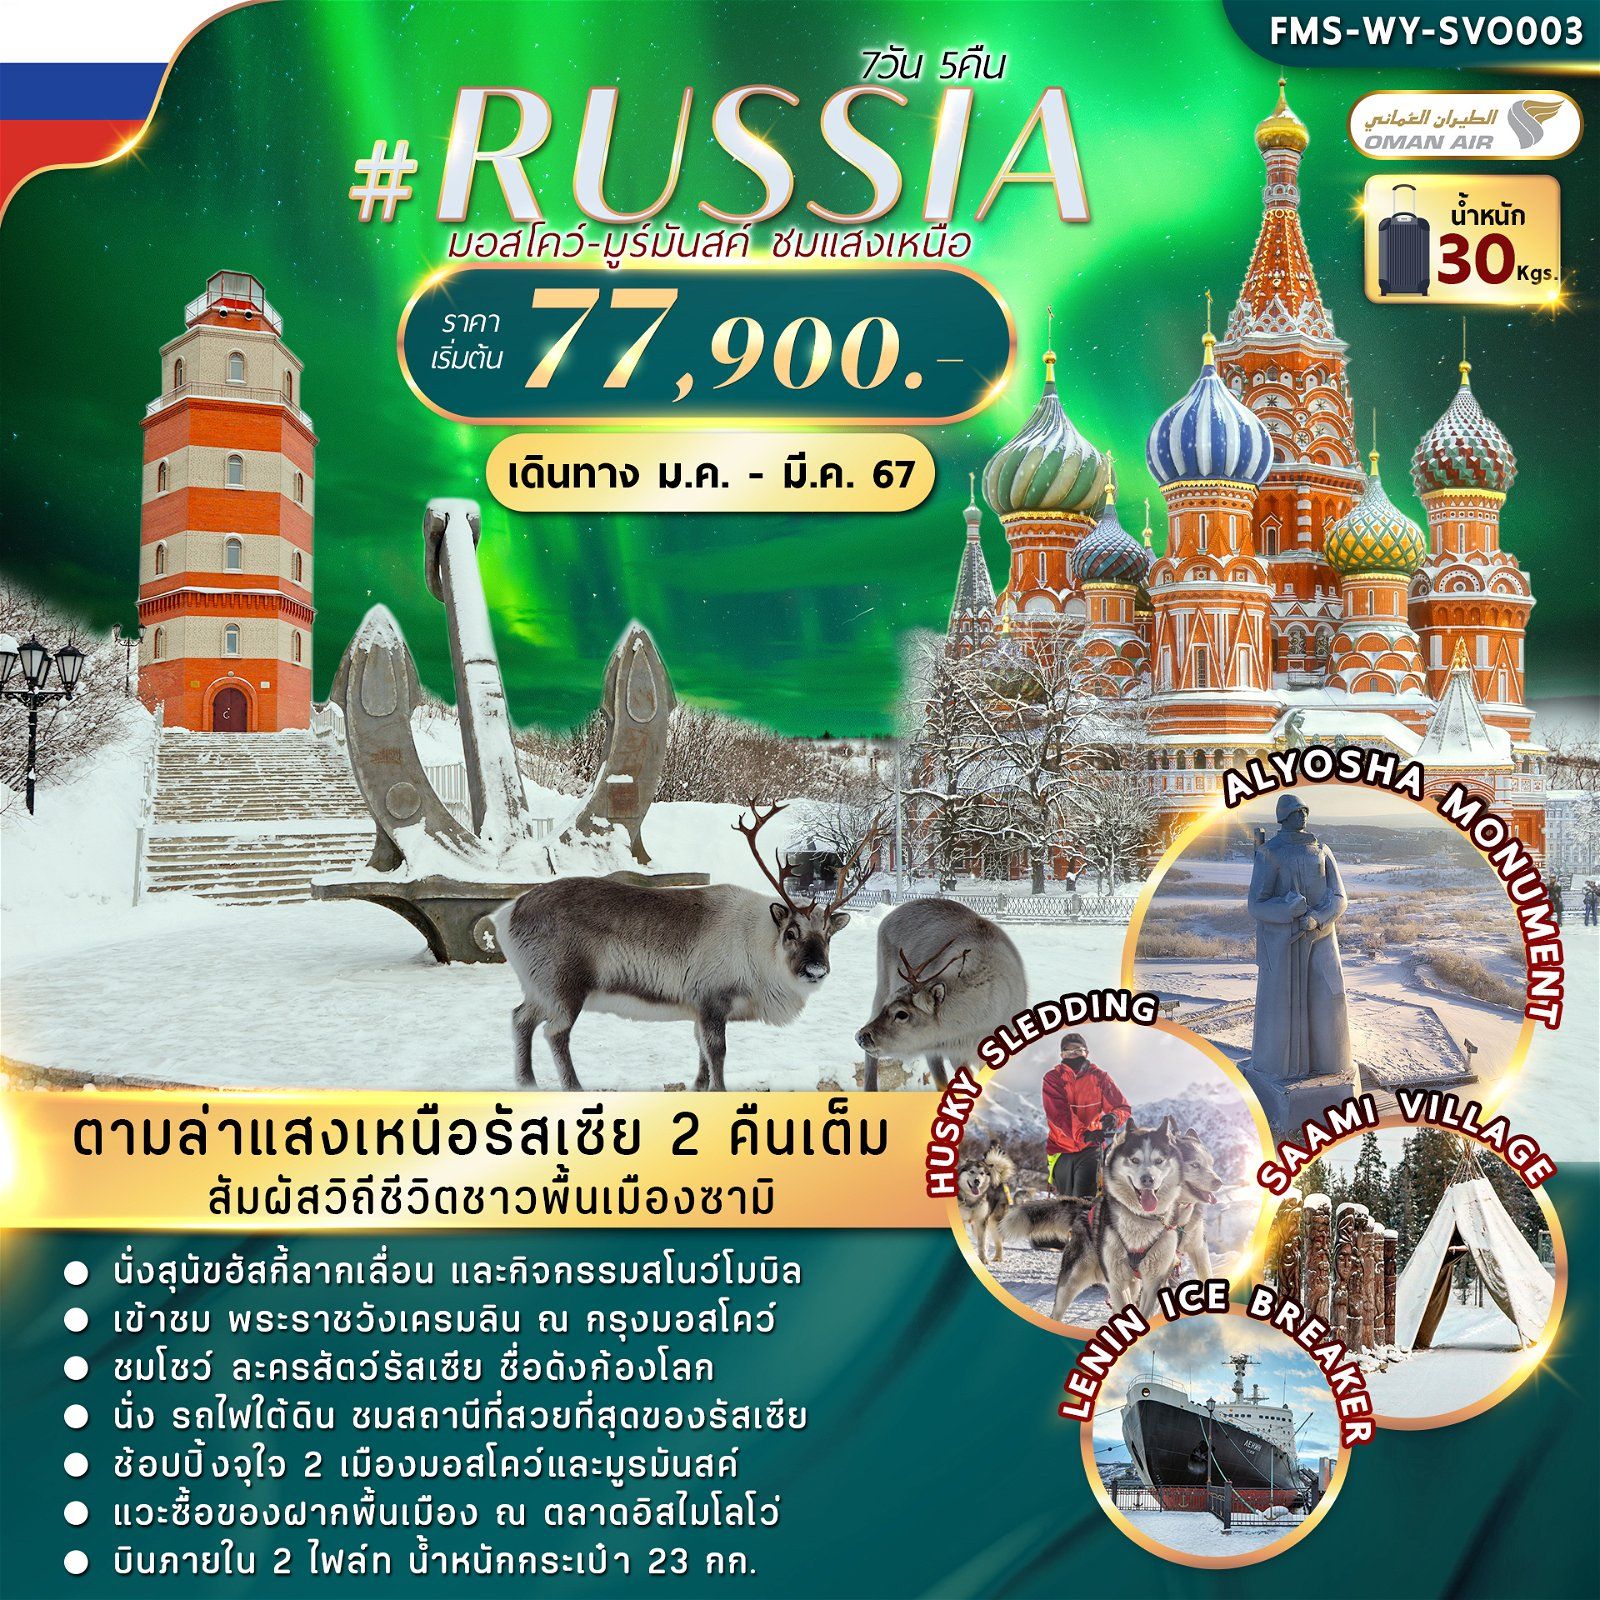 ทัวร์รัสเซีย RUSSIA MOW MURMANSK AURORA 7วัน 5คืน